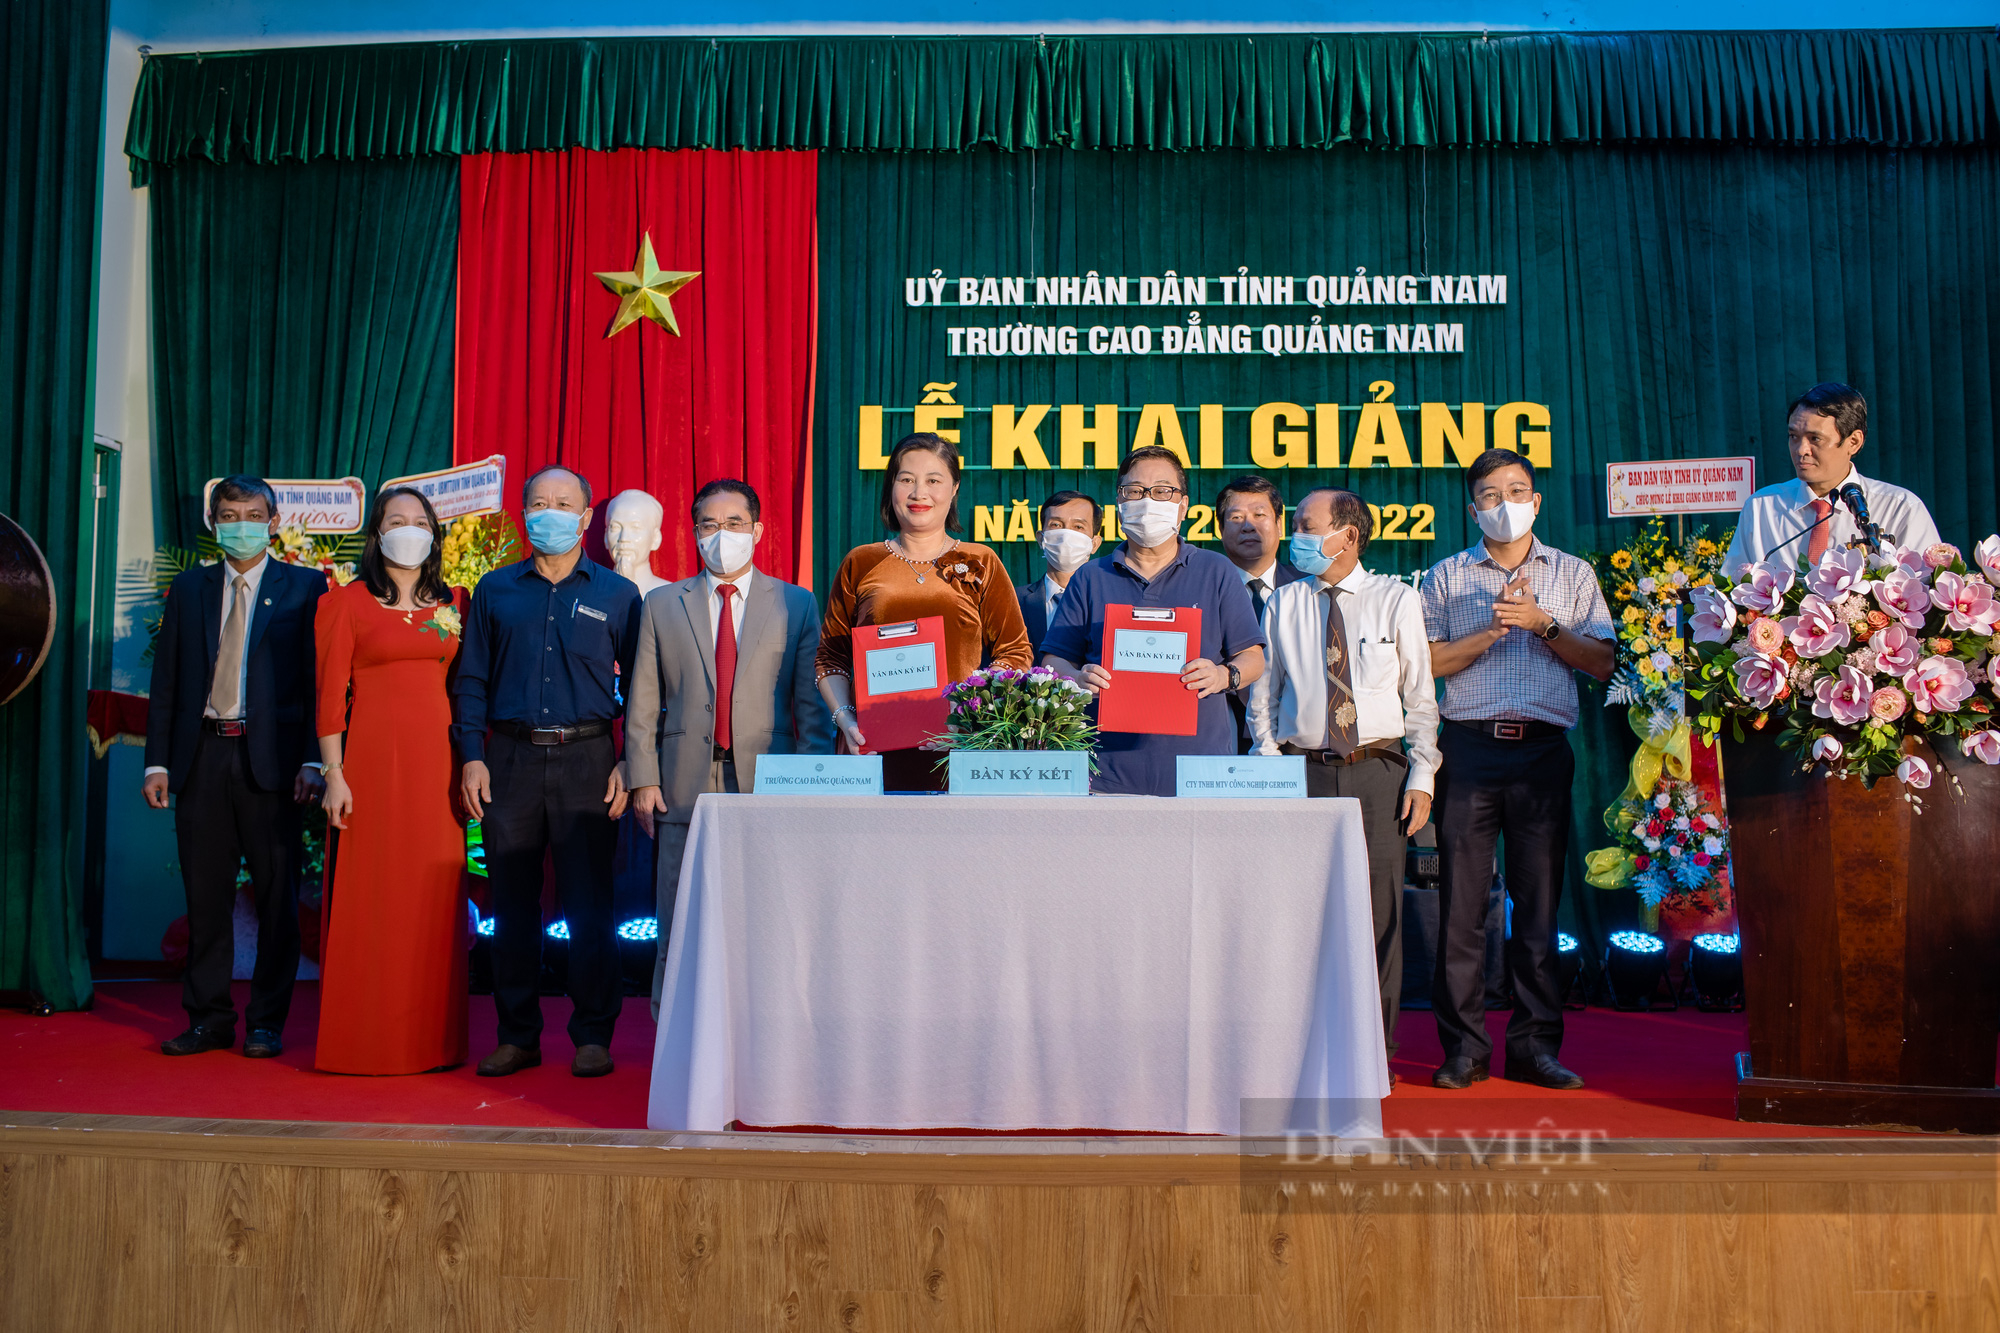 Trường CĐ Quảng Nam khai giảng năm học mới - Lấy chất lượng hàng đầu  - Ảnh 5.